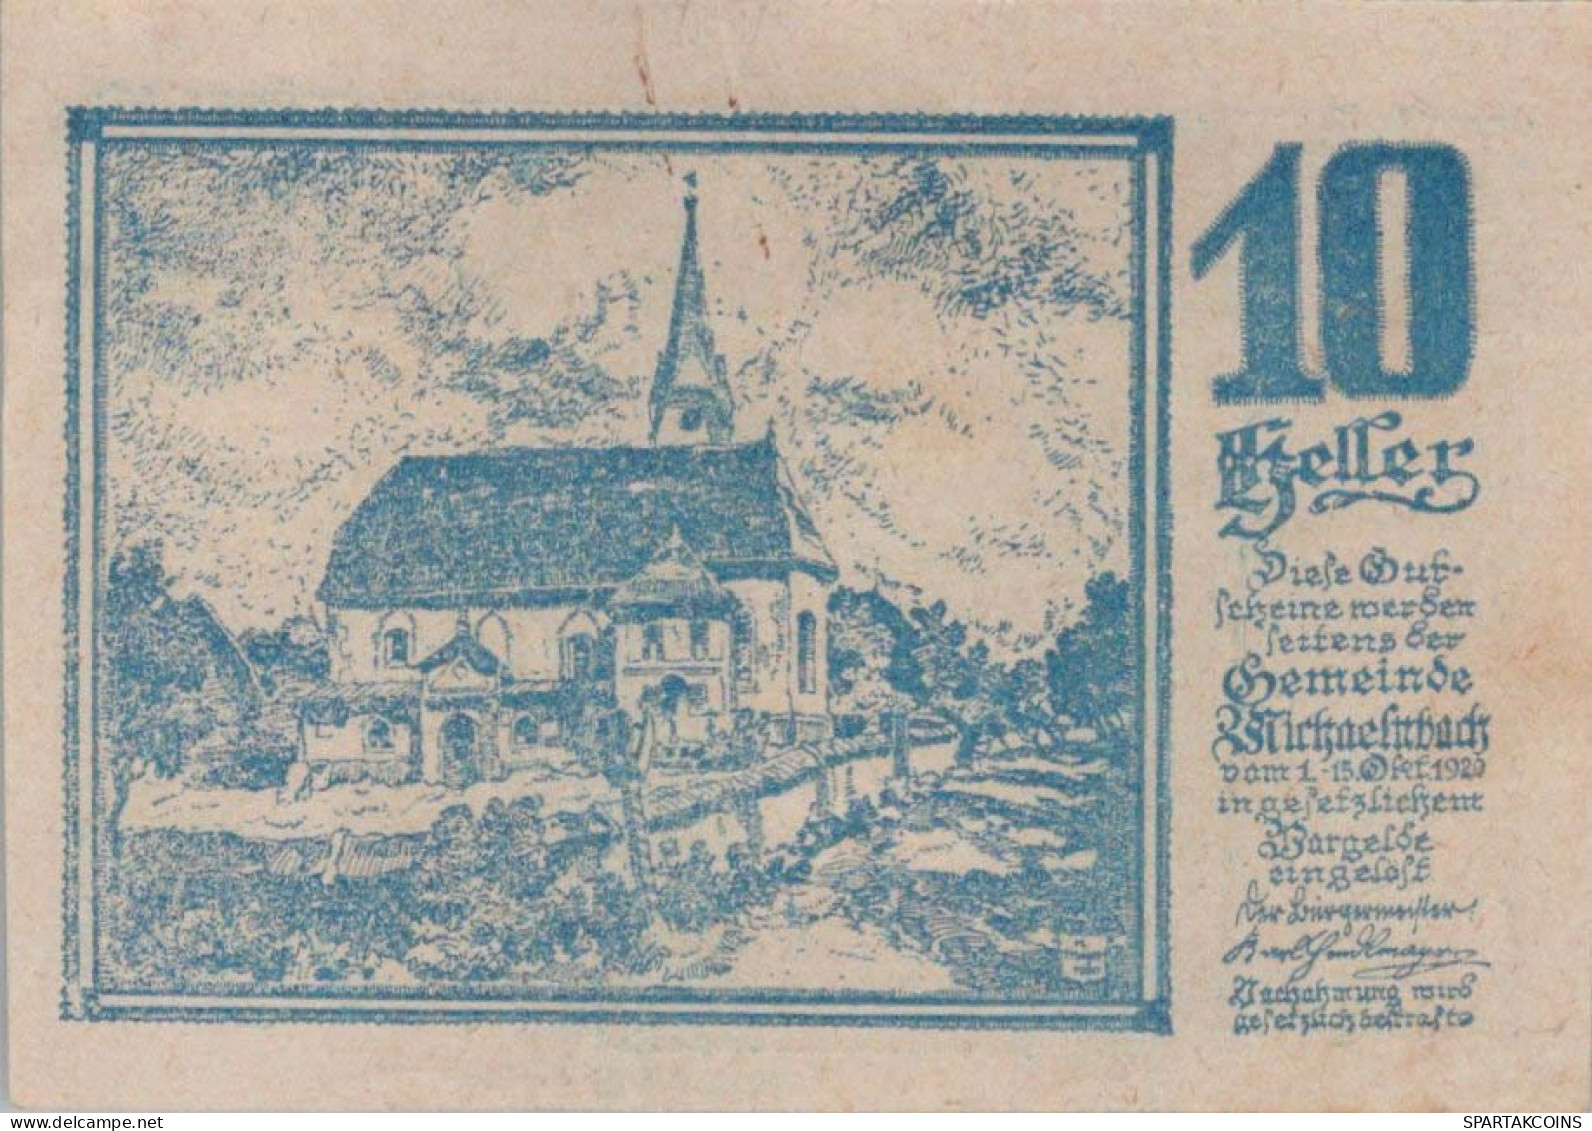 10 HELLER 1920 Stadt MICHAELNBACH Oberösterreich Österreich Notgeld #PD799 - Lokale Ausgaben